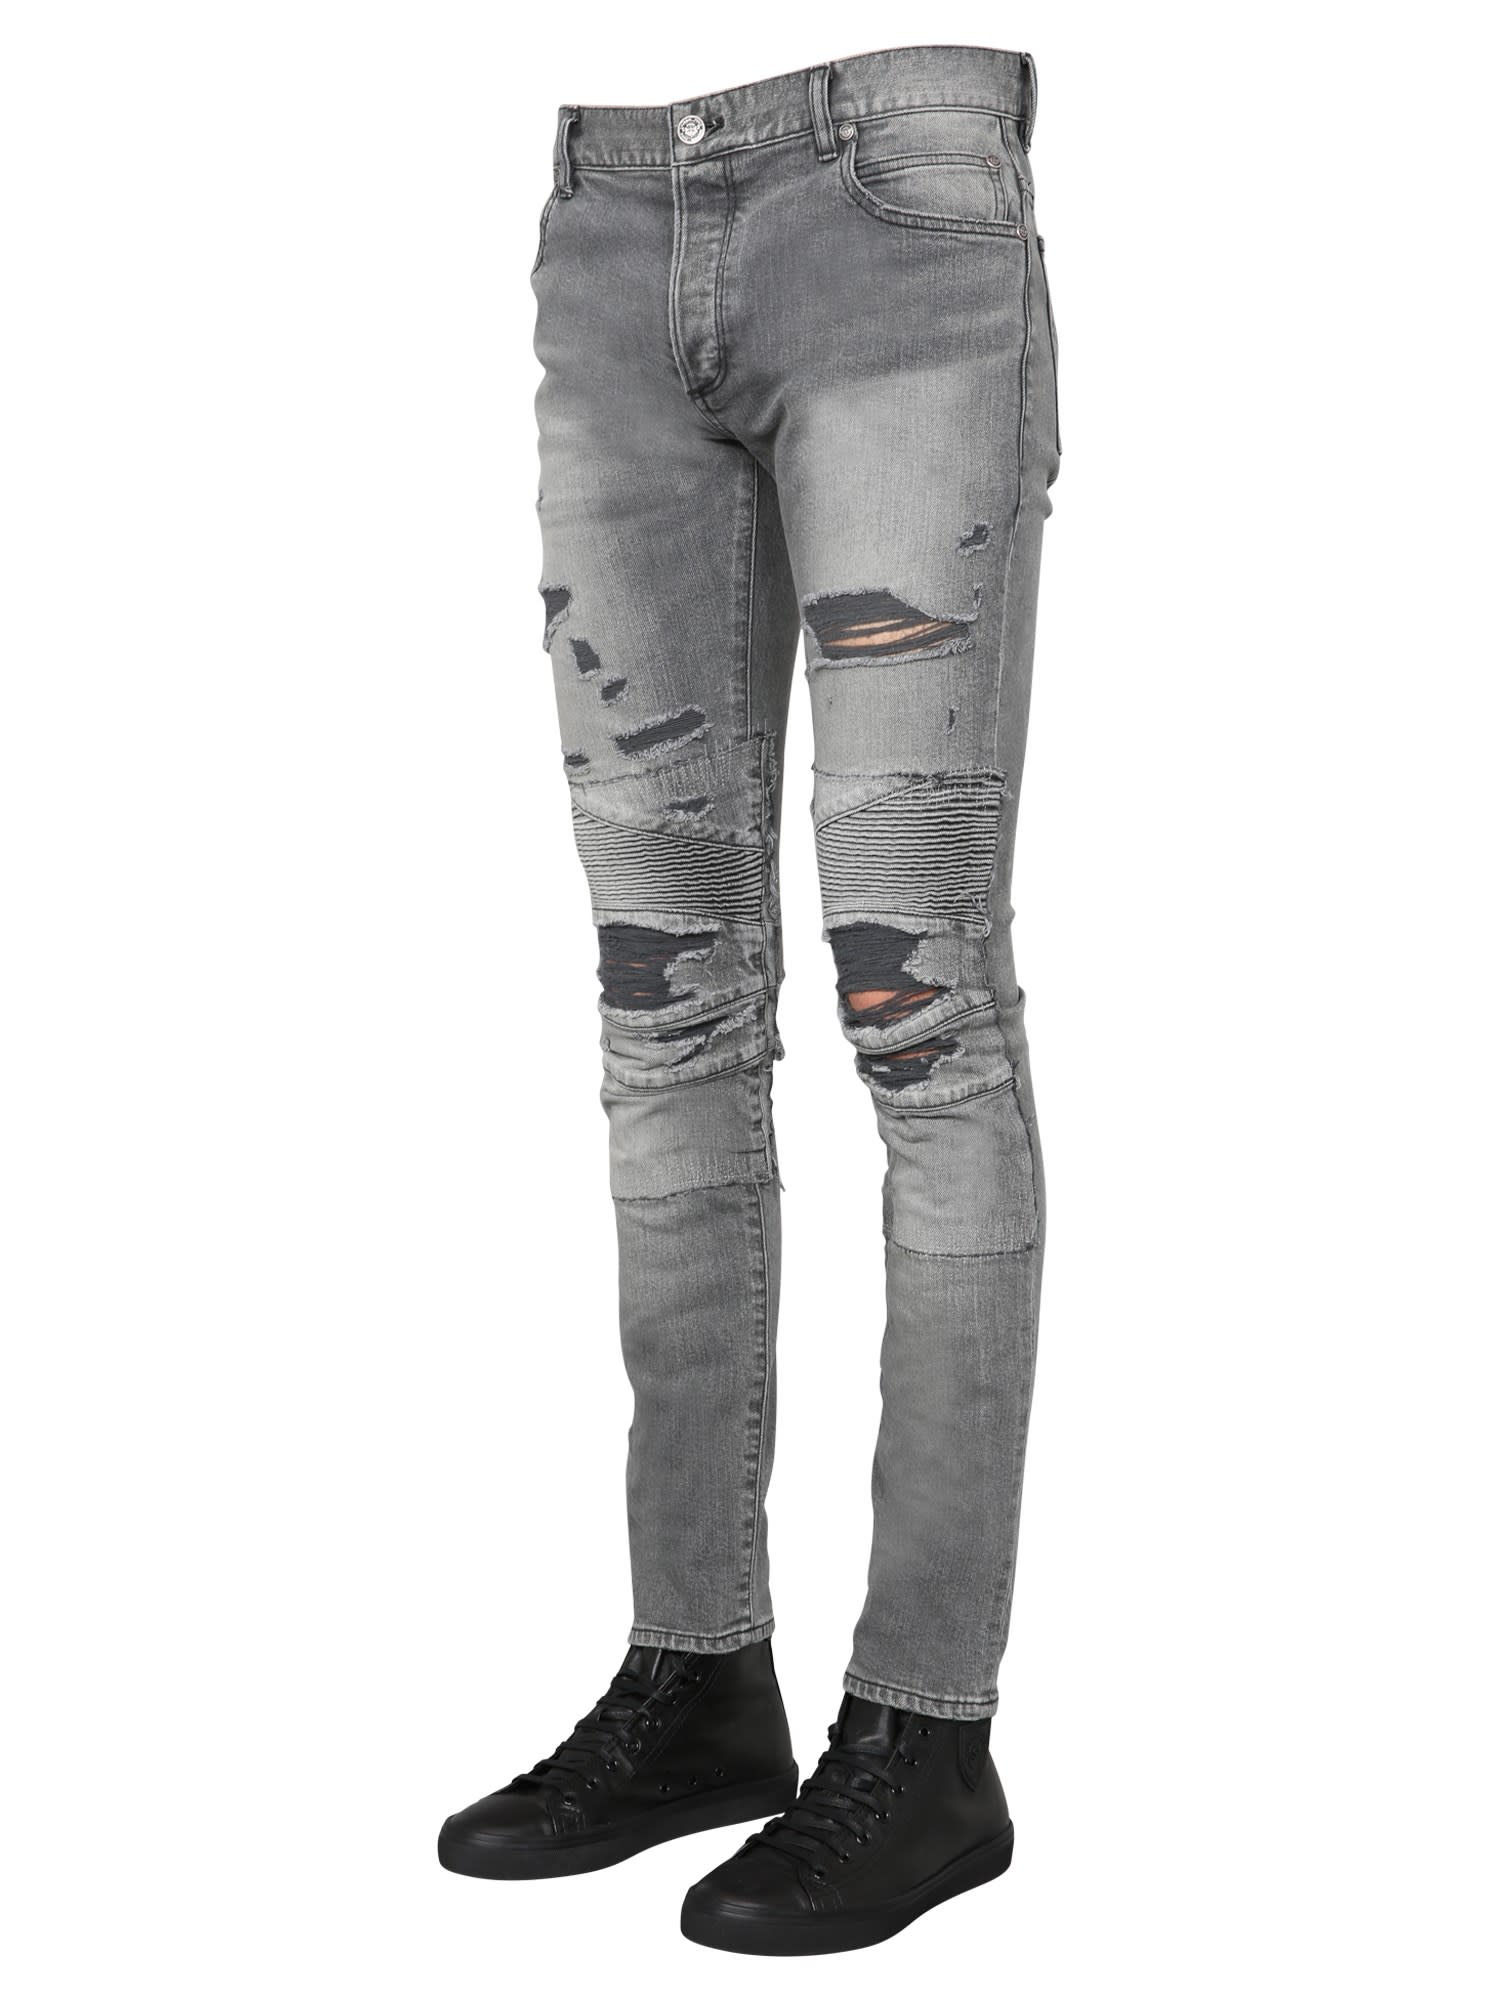 jeans similar to balmain